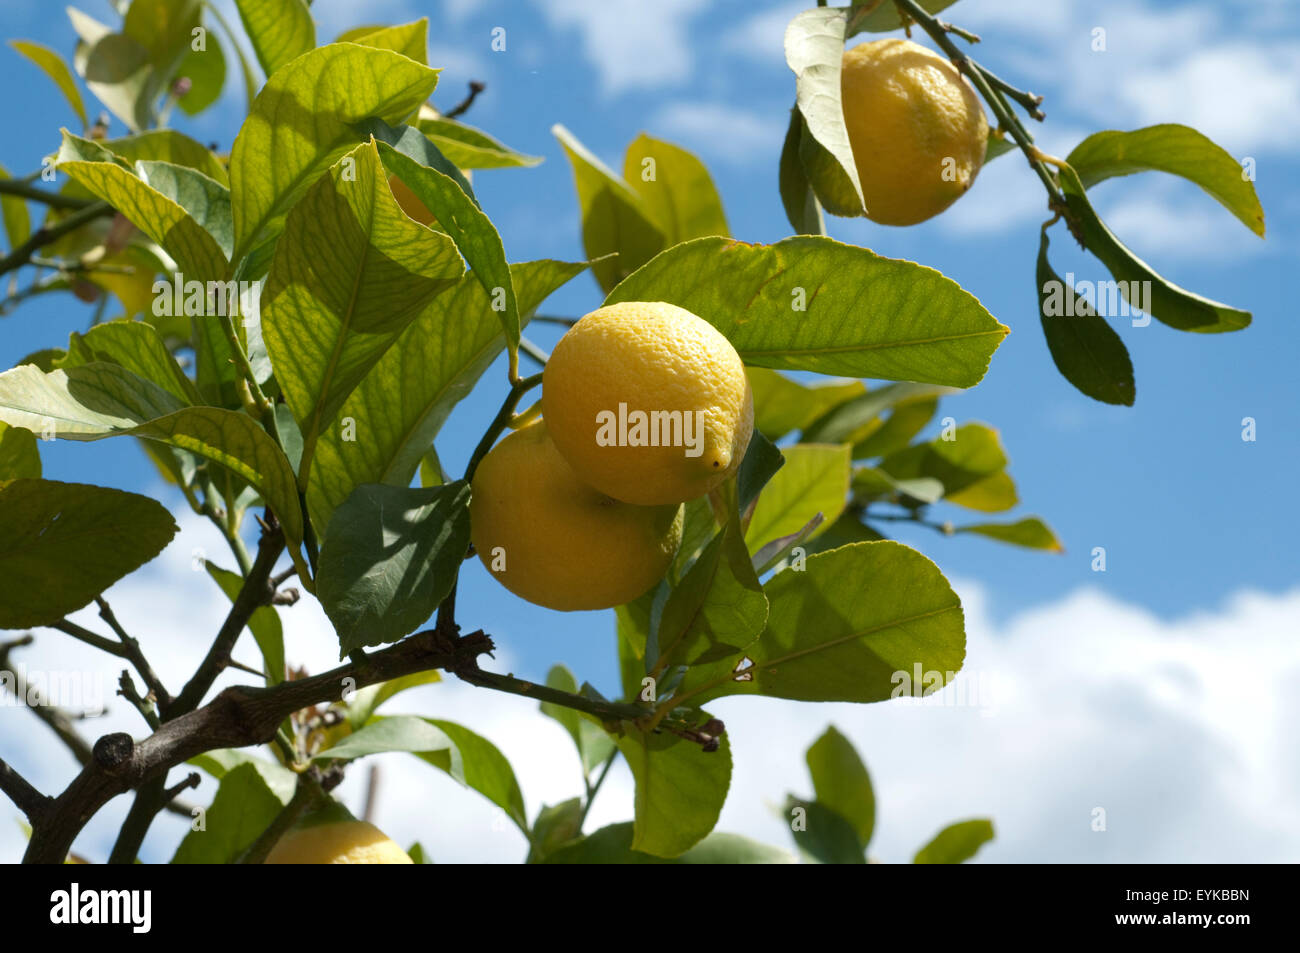 Zitronen, Citrus limon; Stock Photo